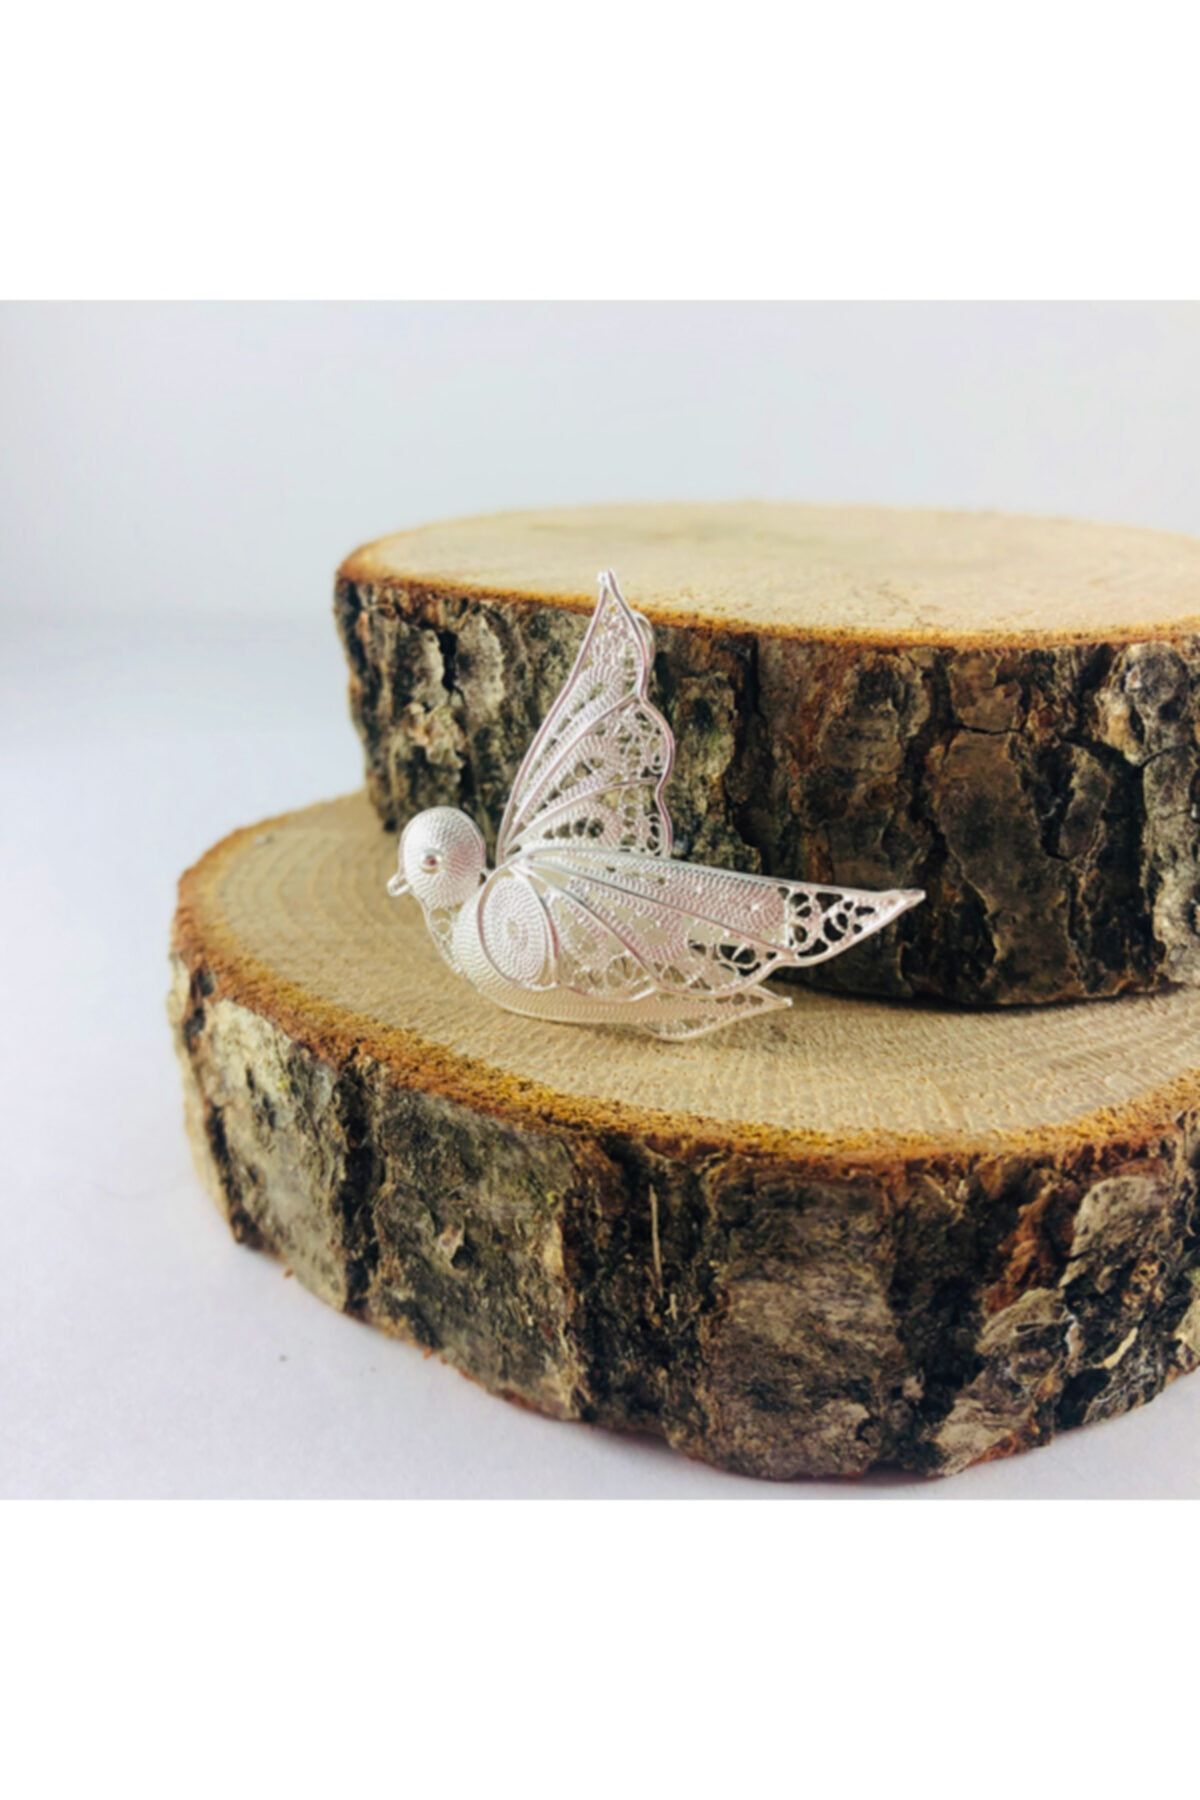 Sungurbey Gümüş Dünyası Güvercin Işlemeli Telkari El Sanatı Gümüş Broş